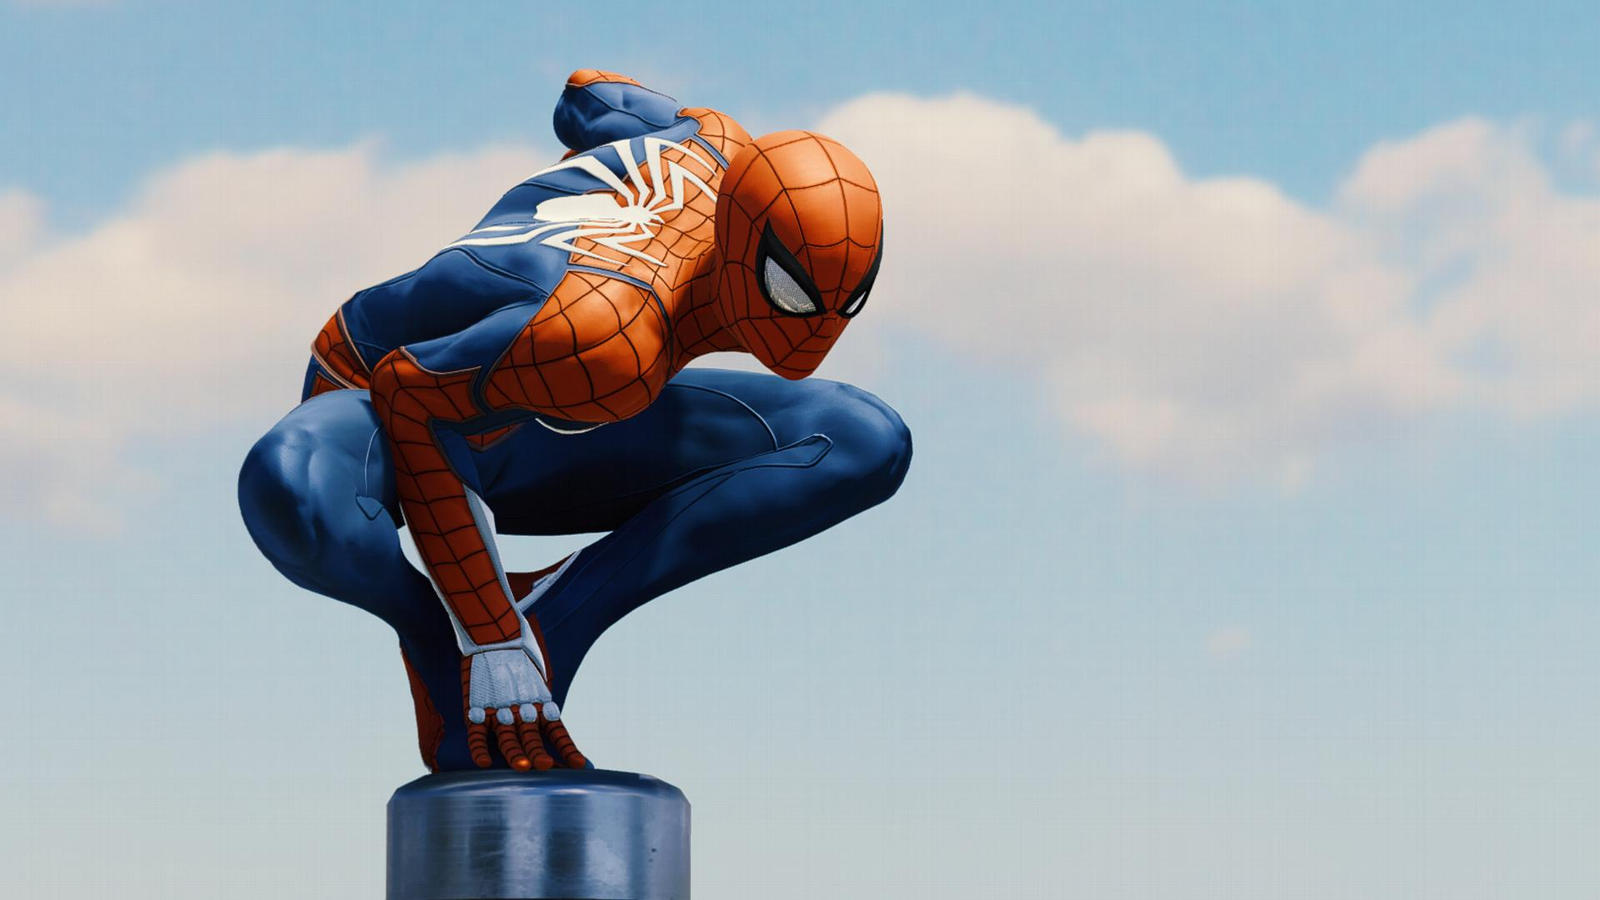 Epic Spidey Pose 1. (Spider-Man PS4). by Remyras on DeviantArt